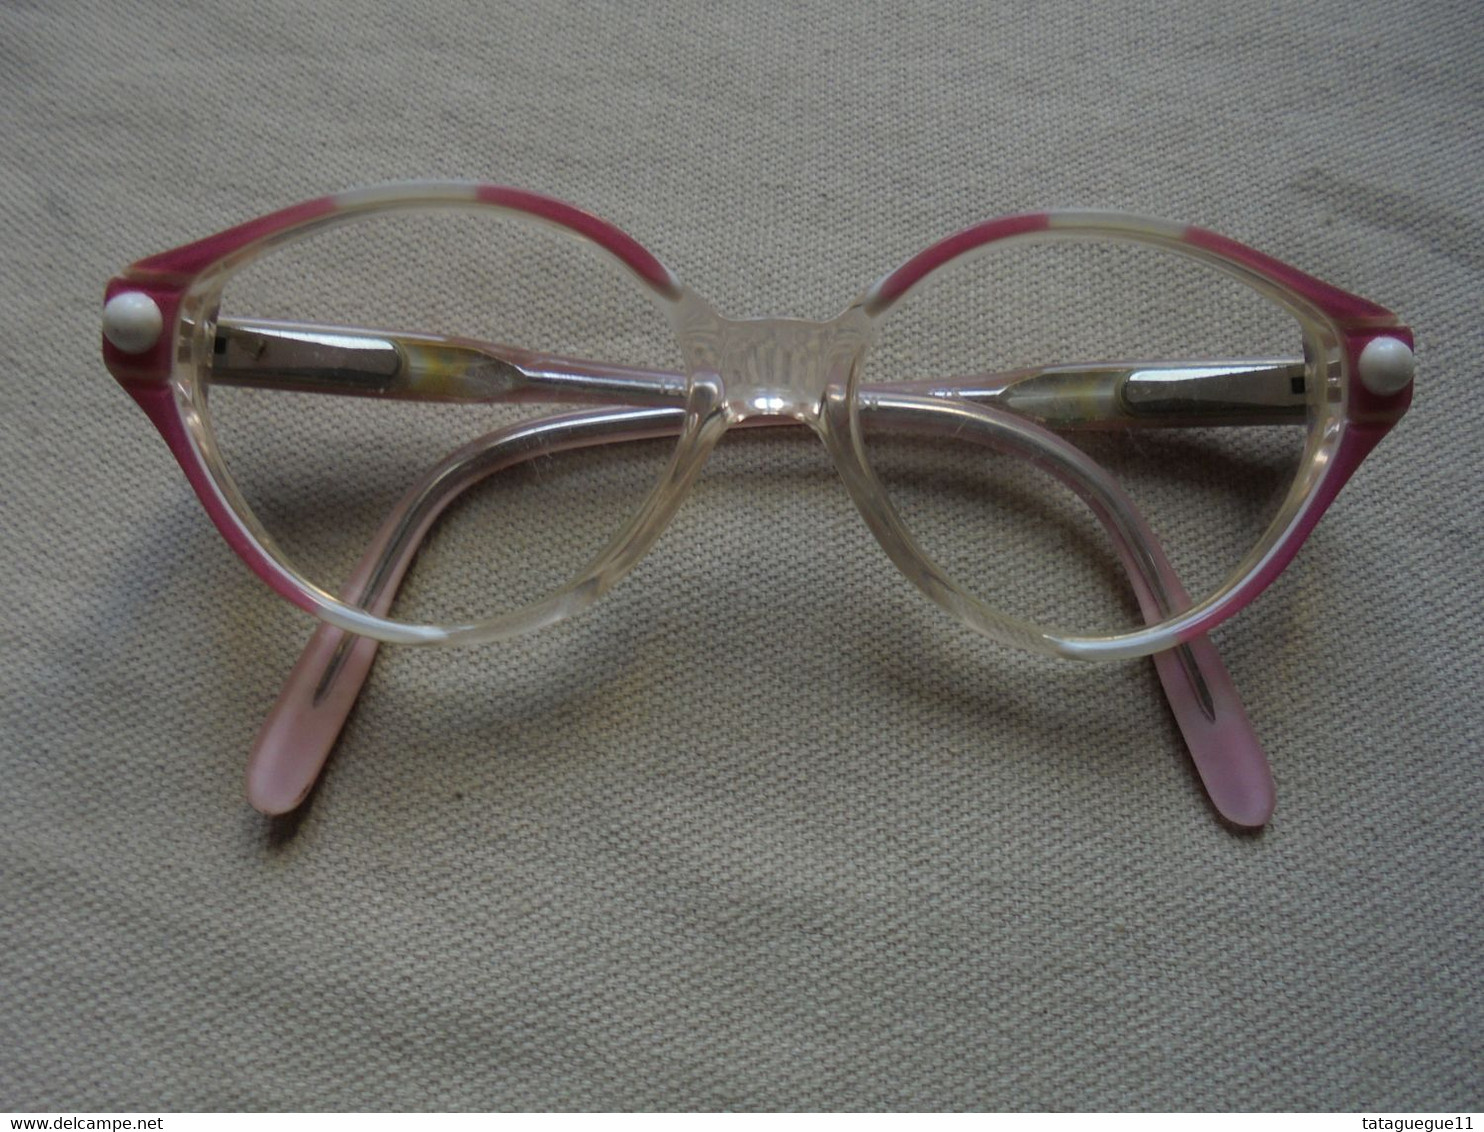 Vintage - Paire De Lunettes De Vue Kickers/Frame France Pour Enfant/fillette - Glasses